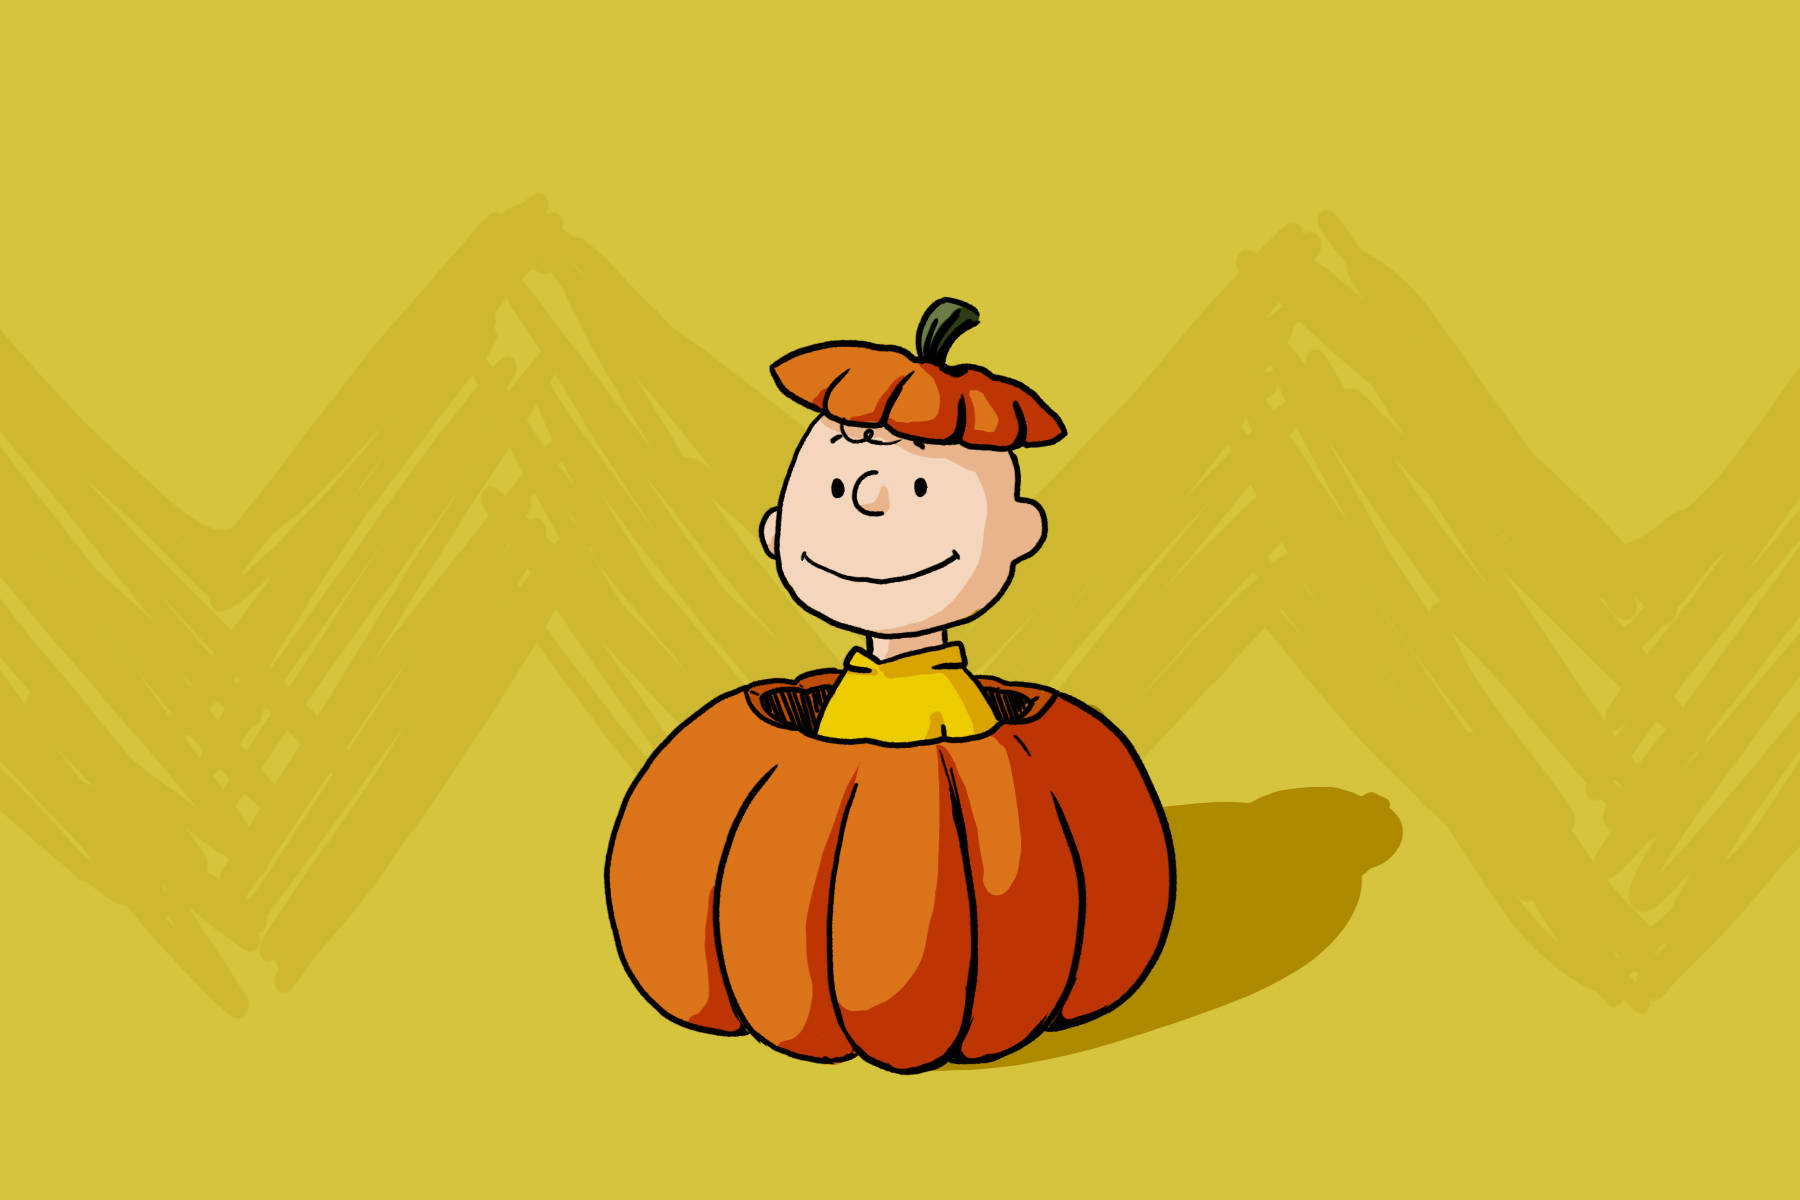 Charlie Brown Inside A Halloween Pumpkin